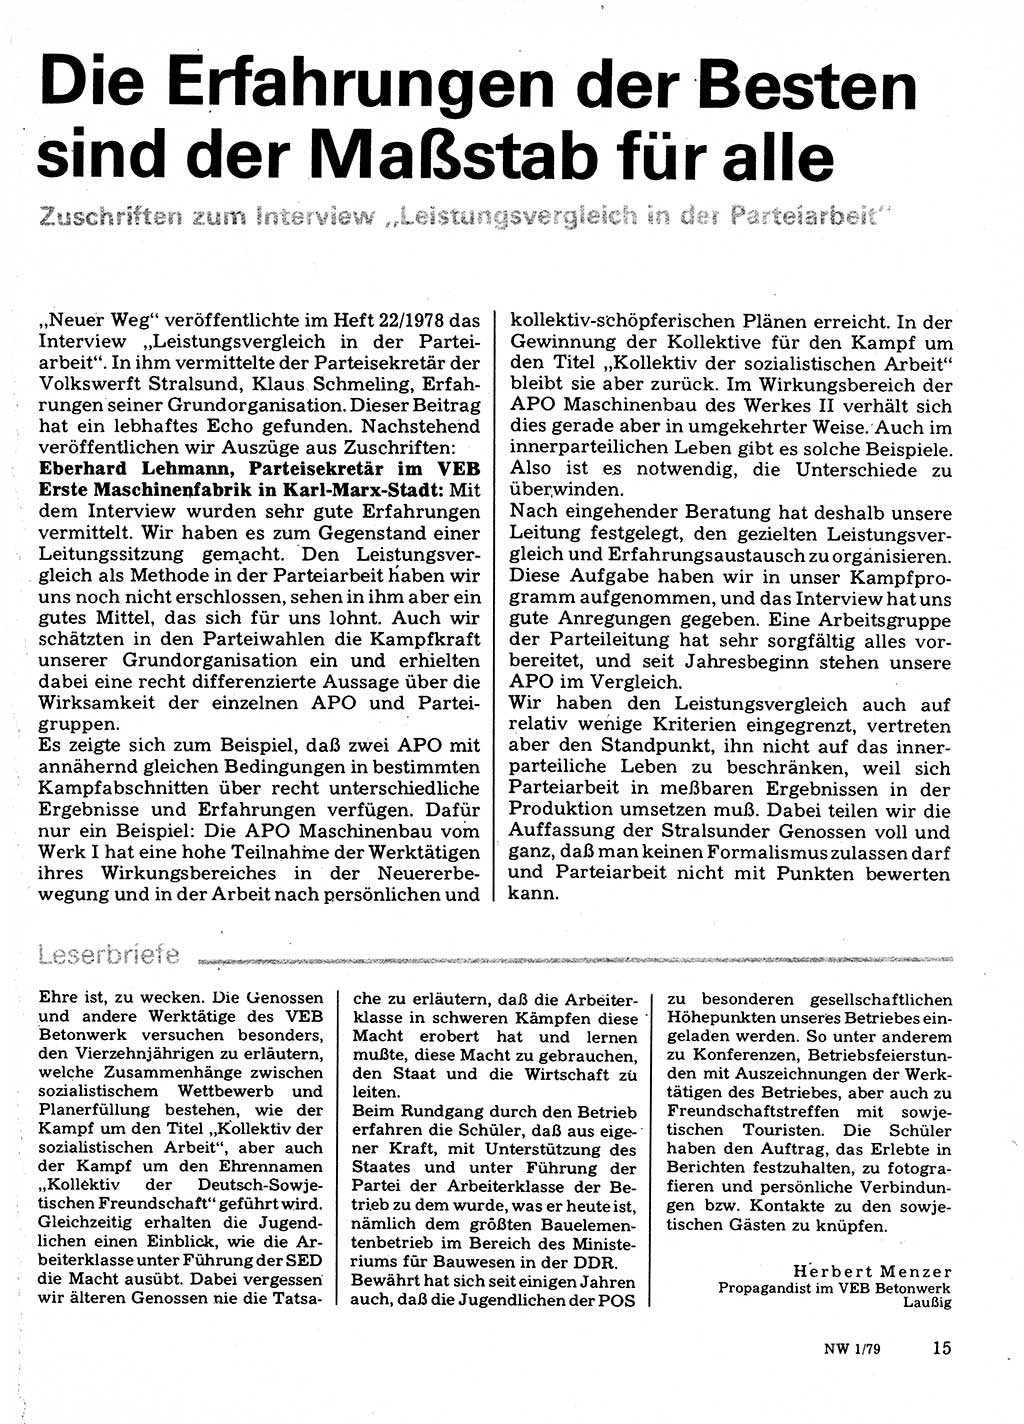 Neuer Weg (NW), Organ des Zentralkomitees (ZK) der SED (Sozialistische Einheitspartei Deutschlands) für Fragen des Parteilebens, 34. Jahrgang [Deutsche Demokratische Republik (DDR)] 1979, Seite 15 (NW ZK SED DDR 1979, S. 15)